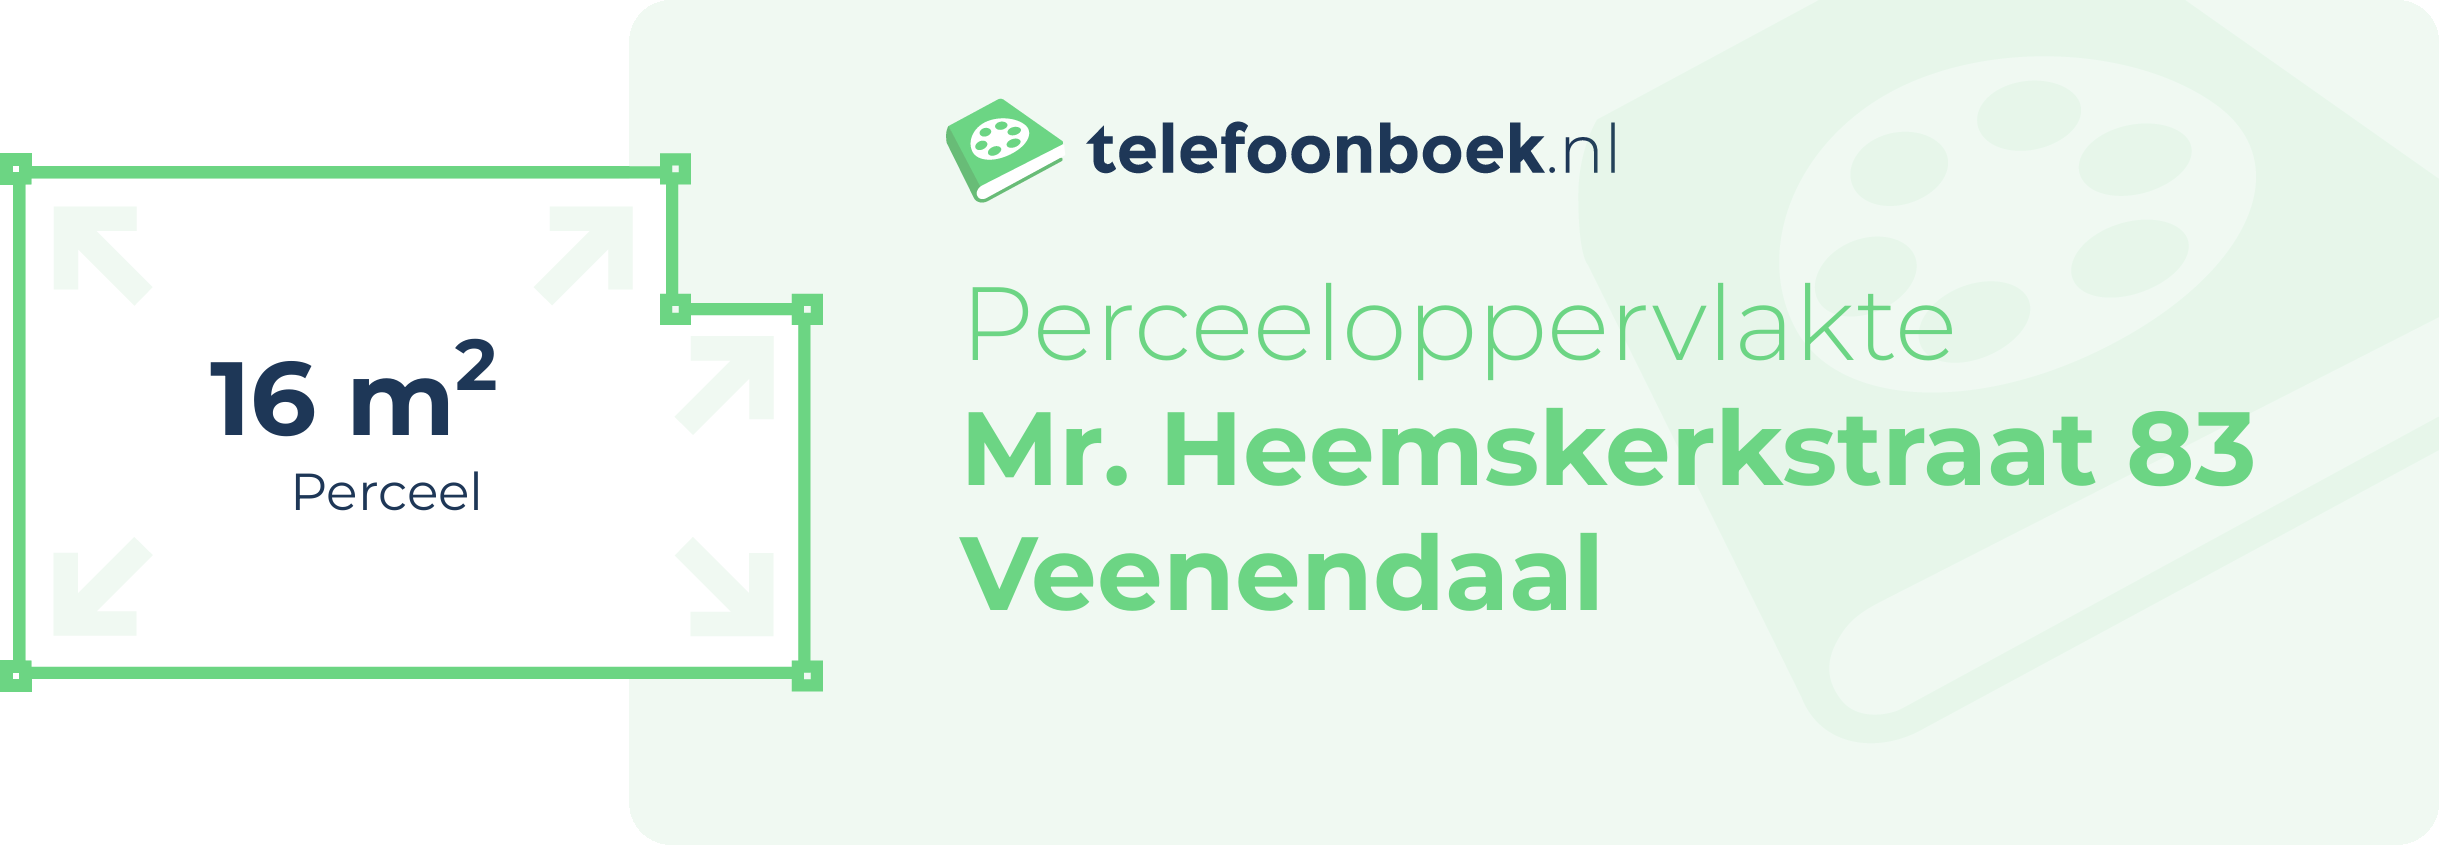 Perceeloppervlakte Mr. Heemskerkstraat 83 Veenendaal